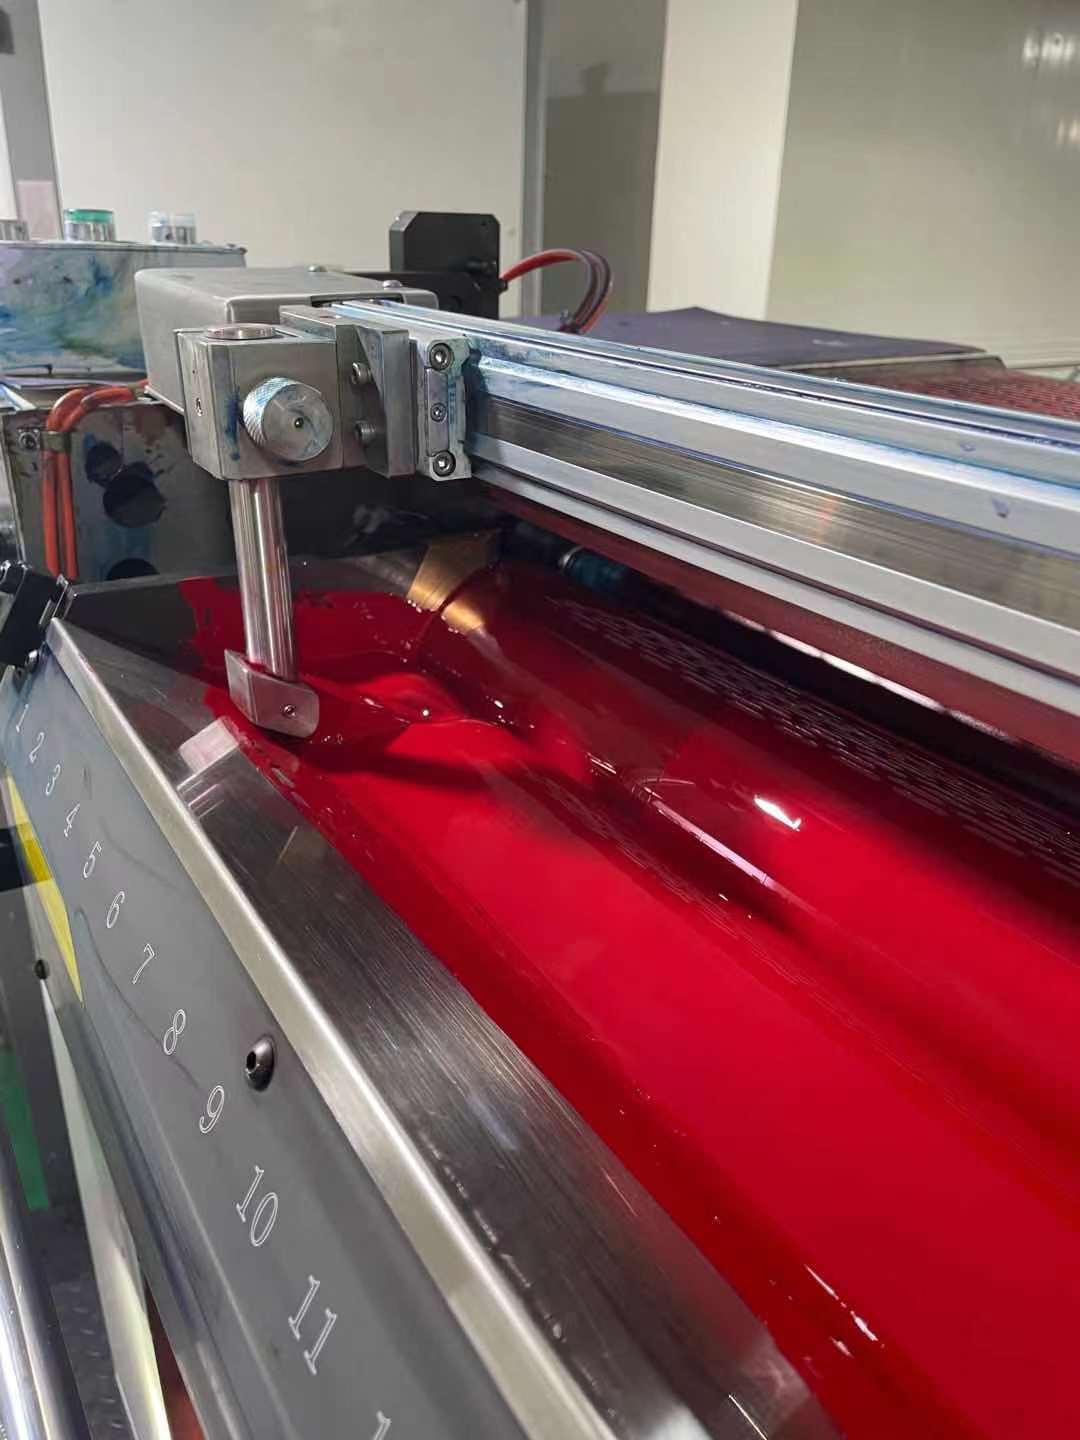 မျက်နှာဖုံး ပုံနှိပ်မှု အတွက် အလိုအလျောက် အလိုအလျောက် ချိန်နှိပ်မှု ကိရိယာများ